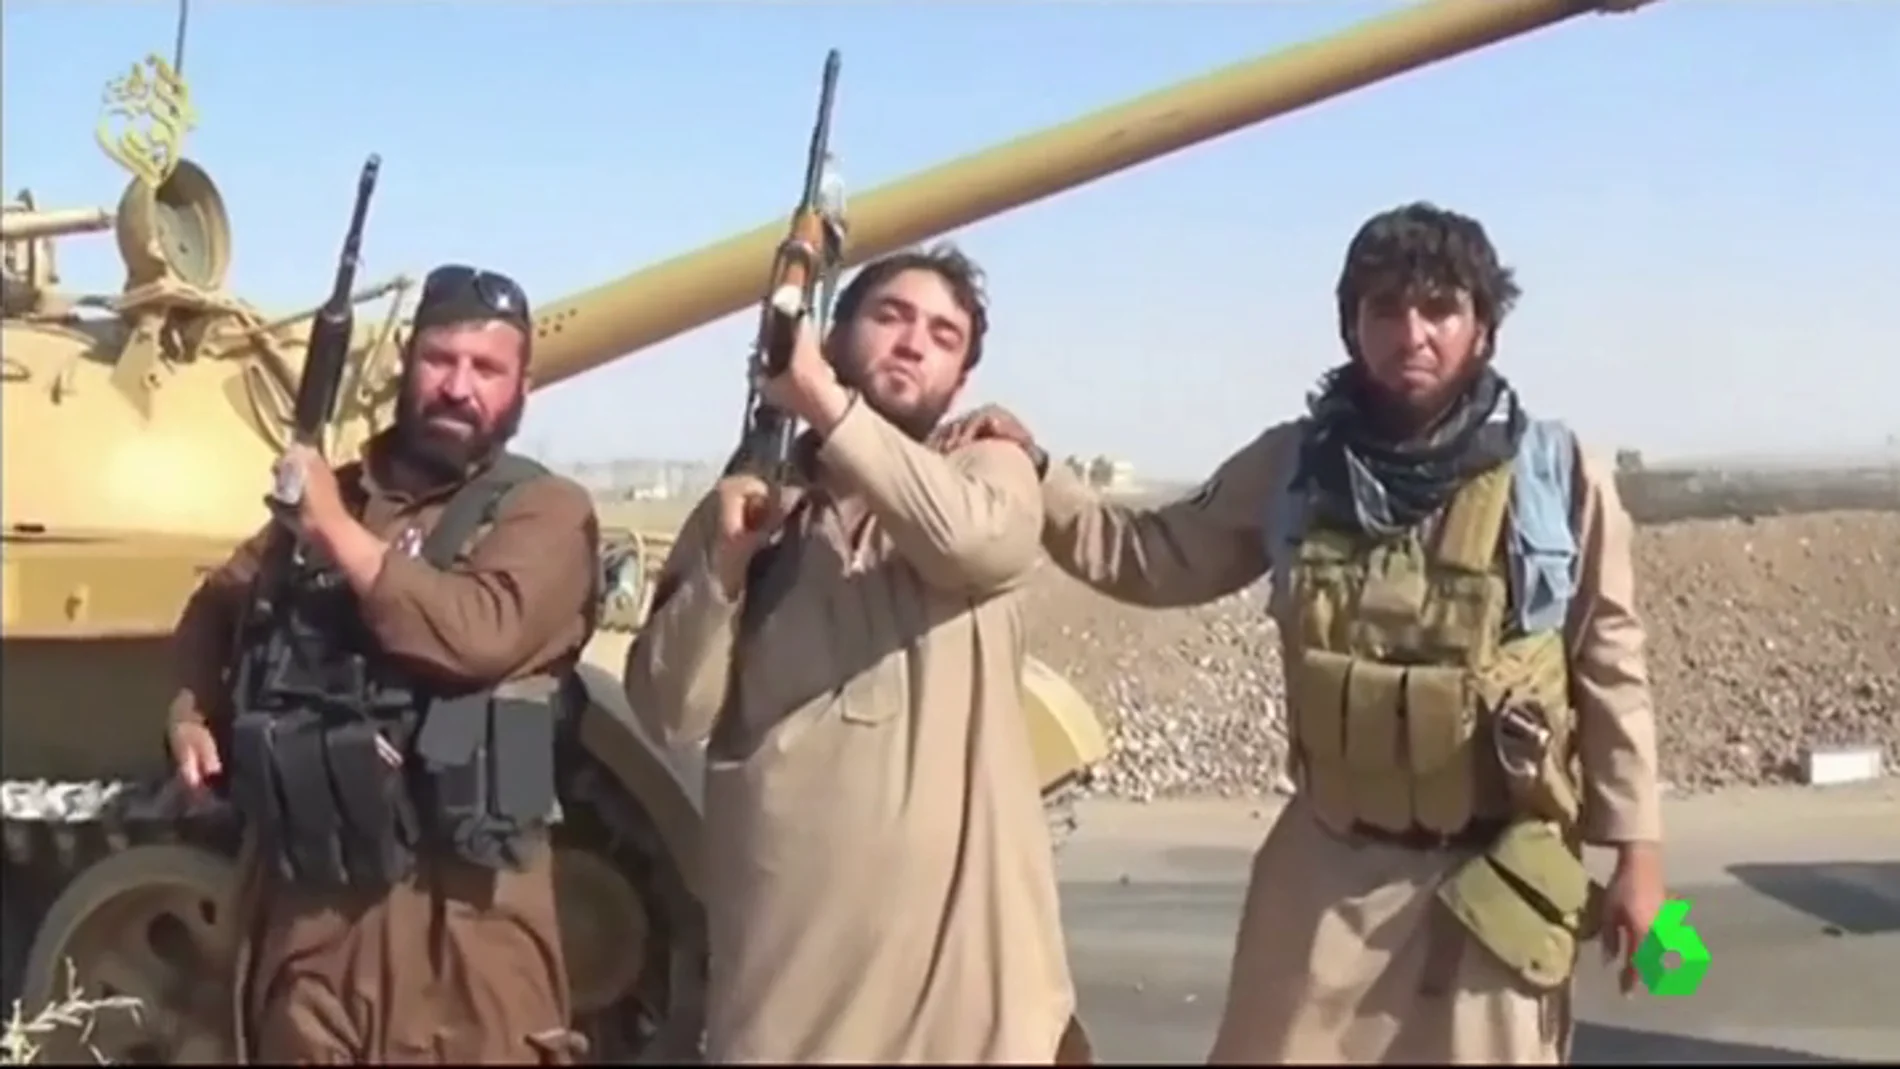 Daesh da indicaciones a sus seguidores para que hagan la yihad financiera: robar al "infiel"